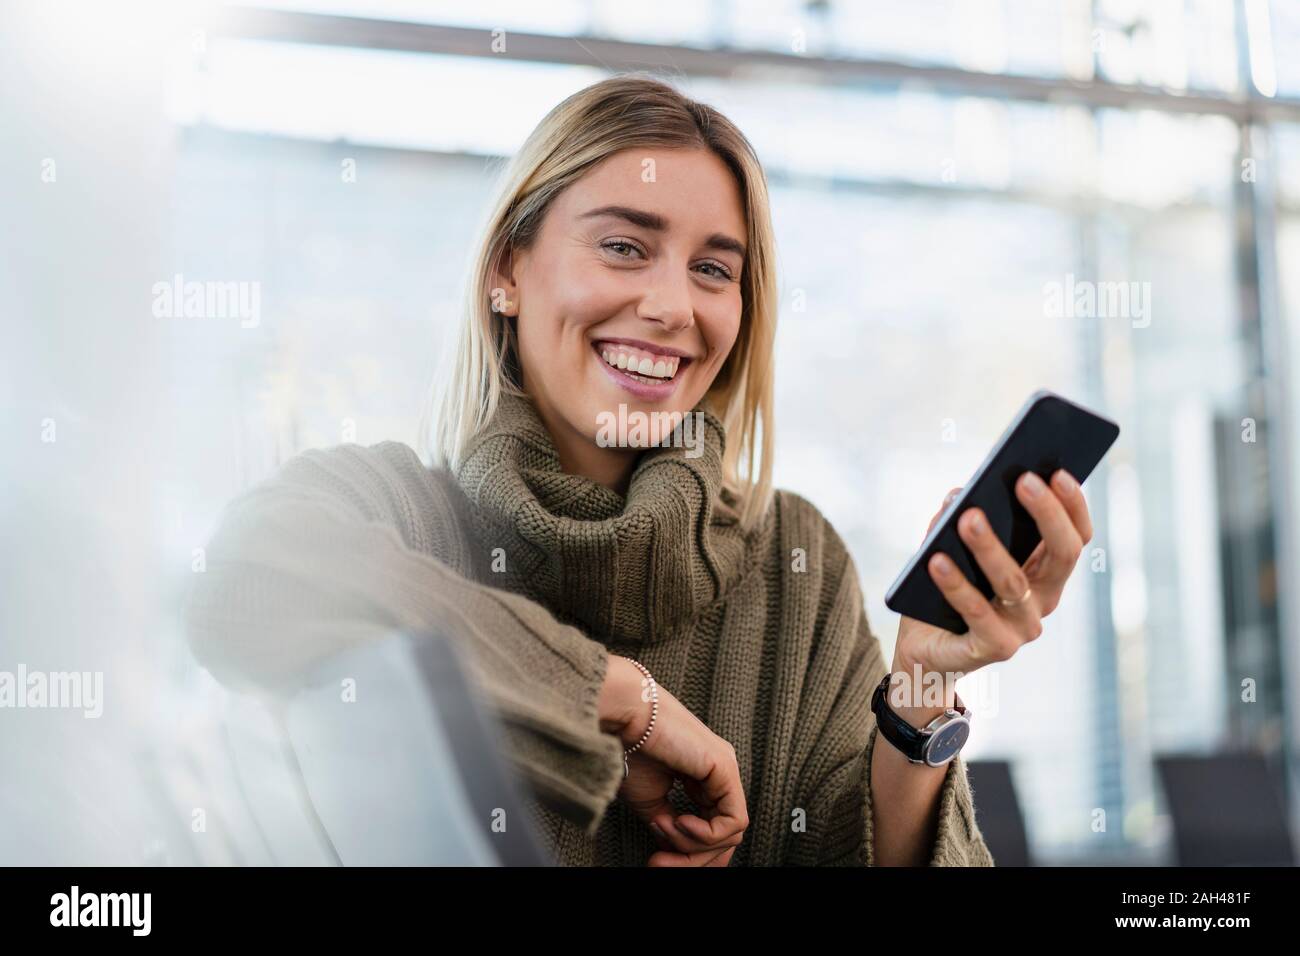 Retrato de mujer joven feliz sentado en el área de espera con teléfono celular Foto de stock